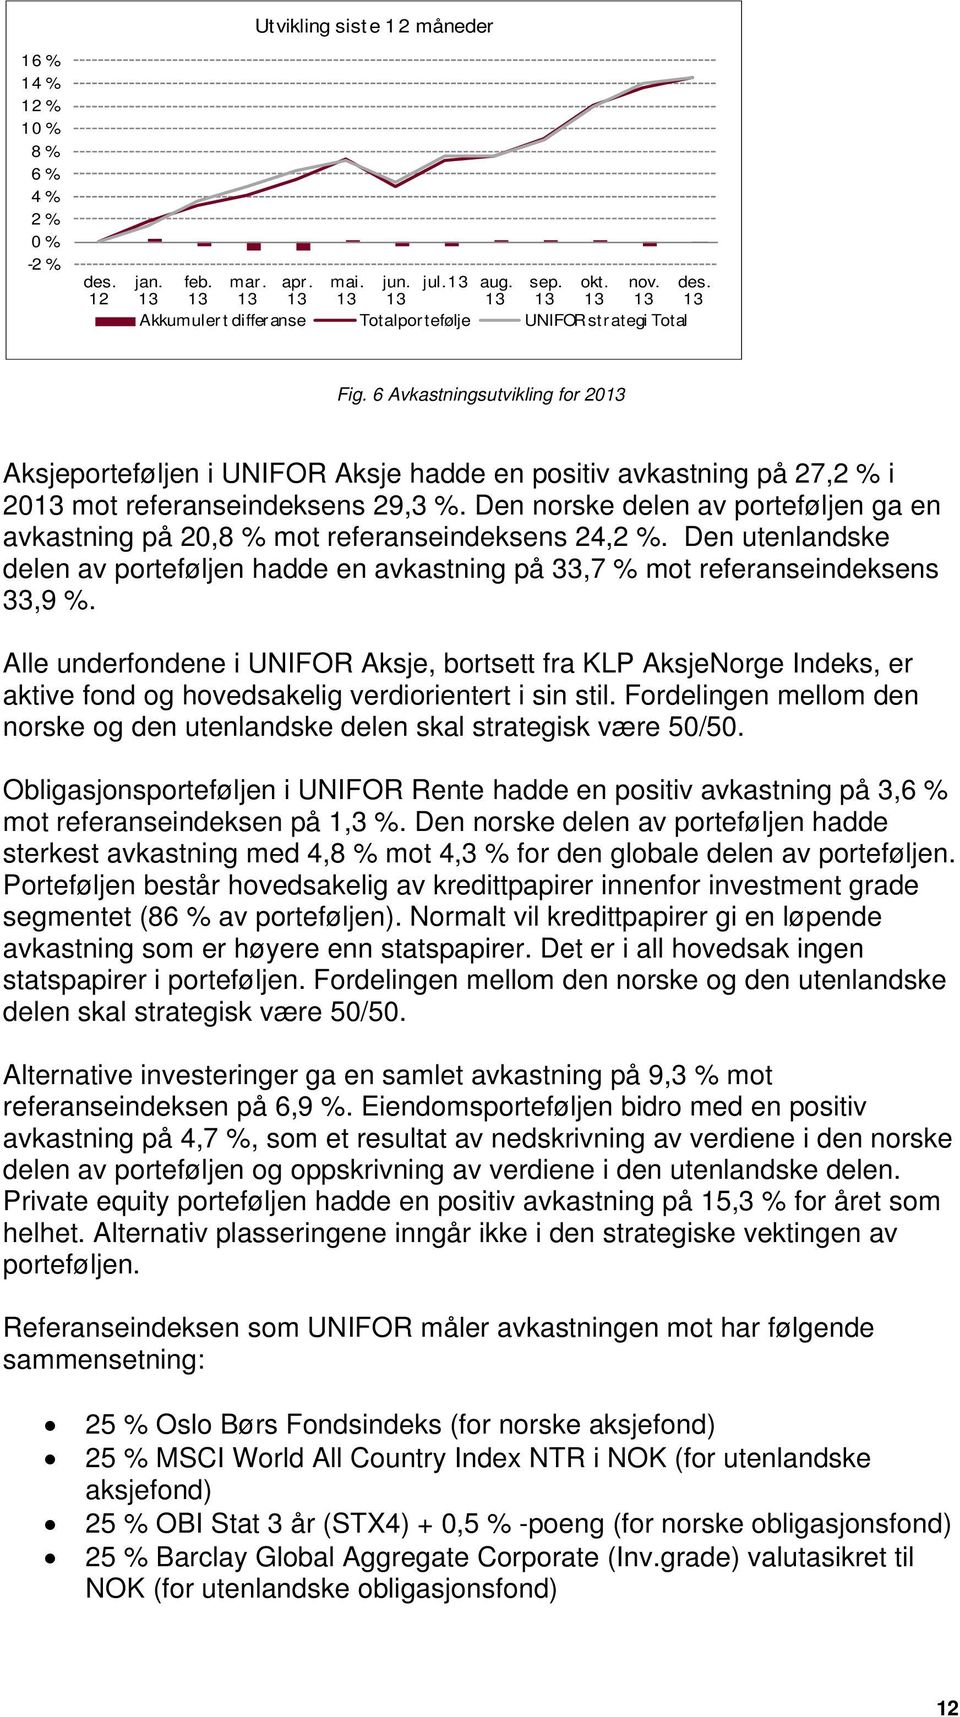 Den norske delen av porteføljen ga en avkastning på 20,8 % mot referanseindeksens 24,2 %. Den utenlandske delen av porteføljen hadde en avkastning på 33,7 % mot referanseindeksens 33,9 %.